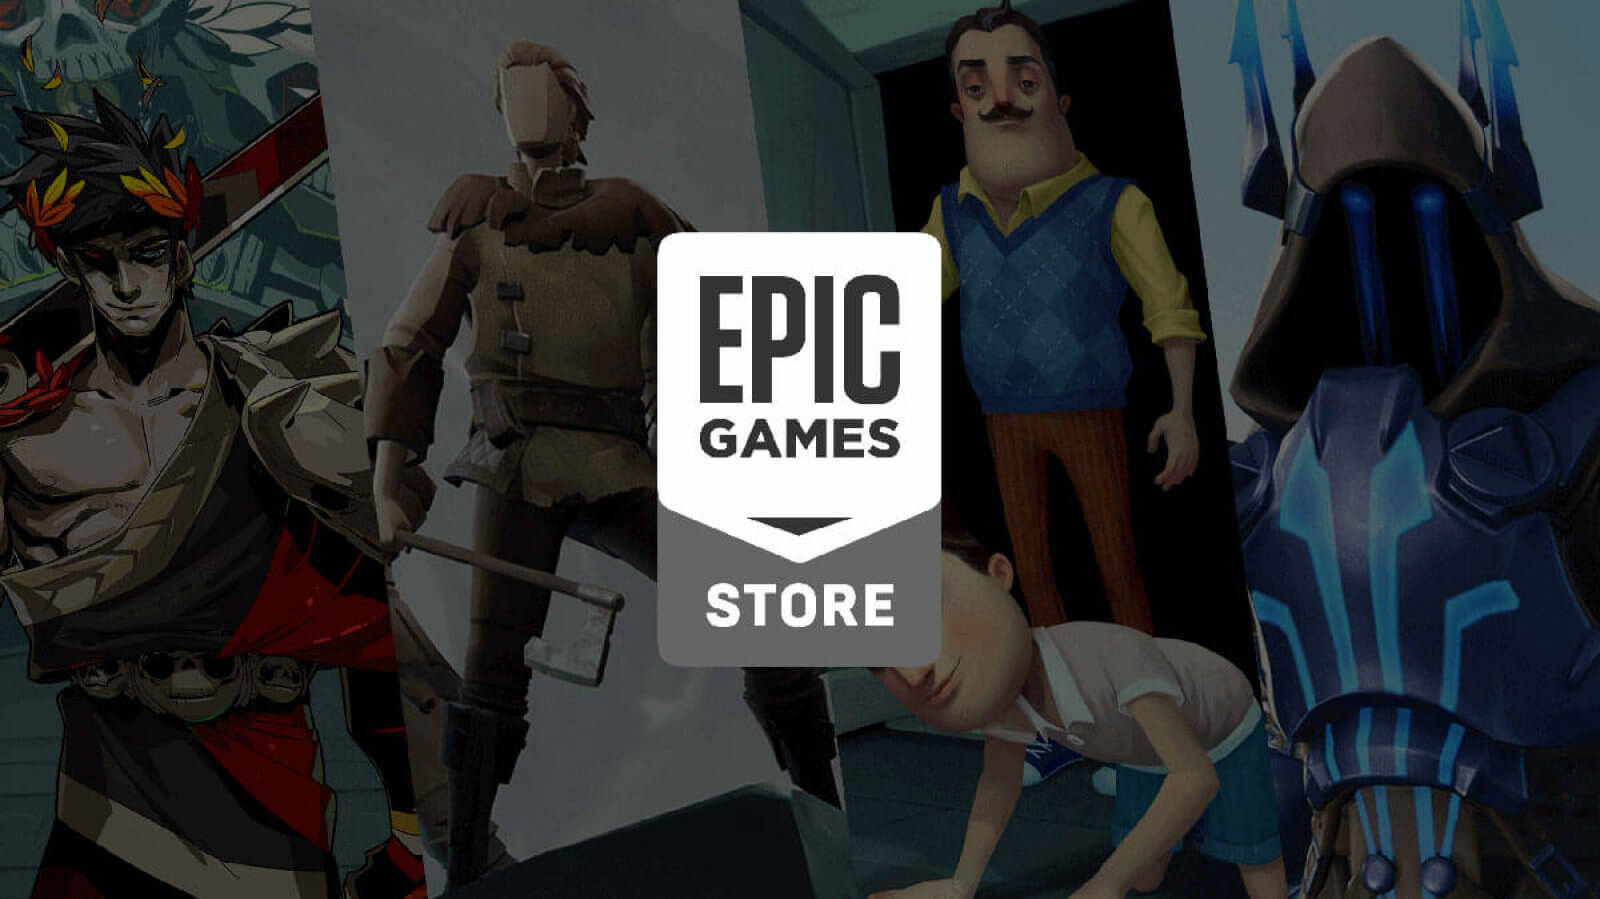 Conarium sekarang tersedia secara gratis di Epic Games Store, permainan Batman akan gratis pada 19 September